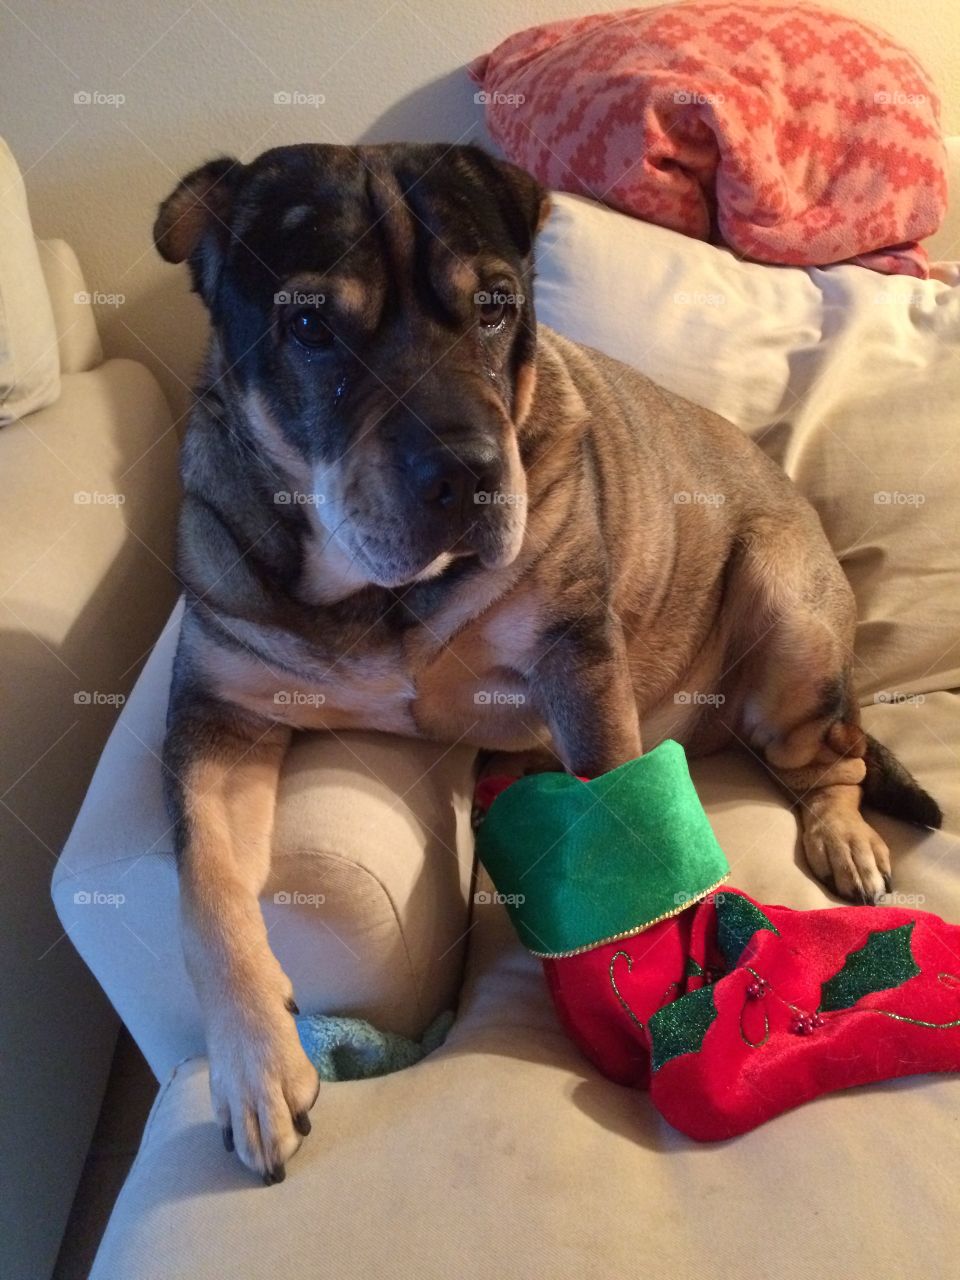 Dog wearing stocking